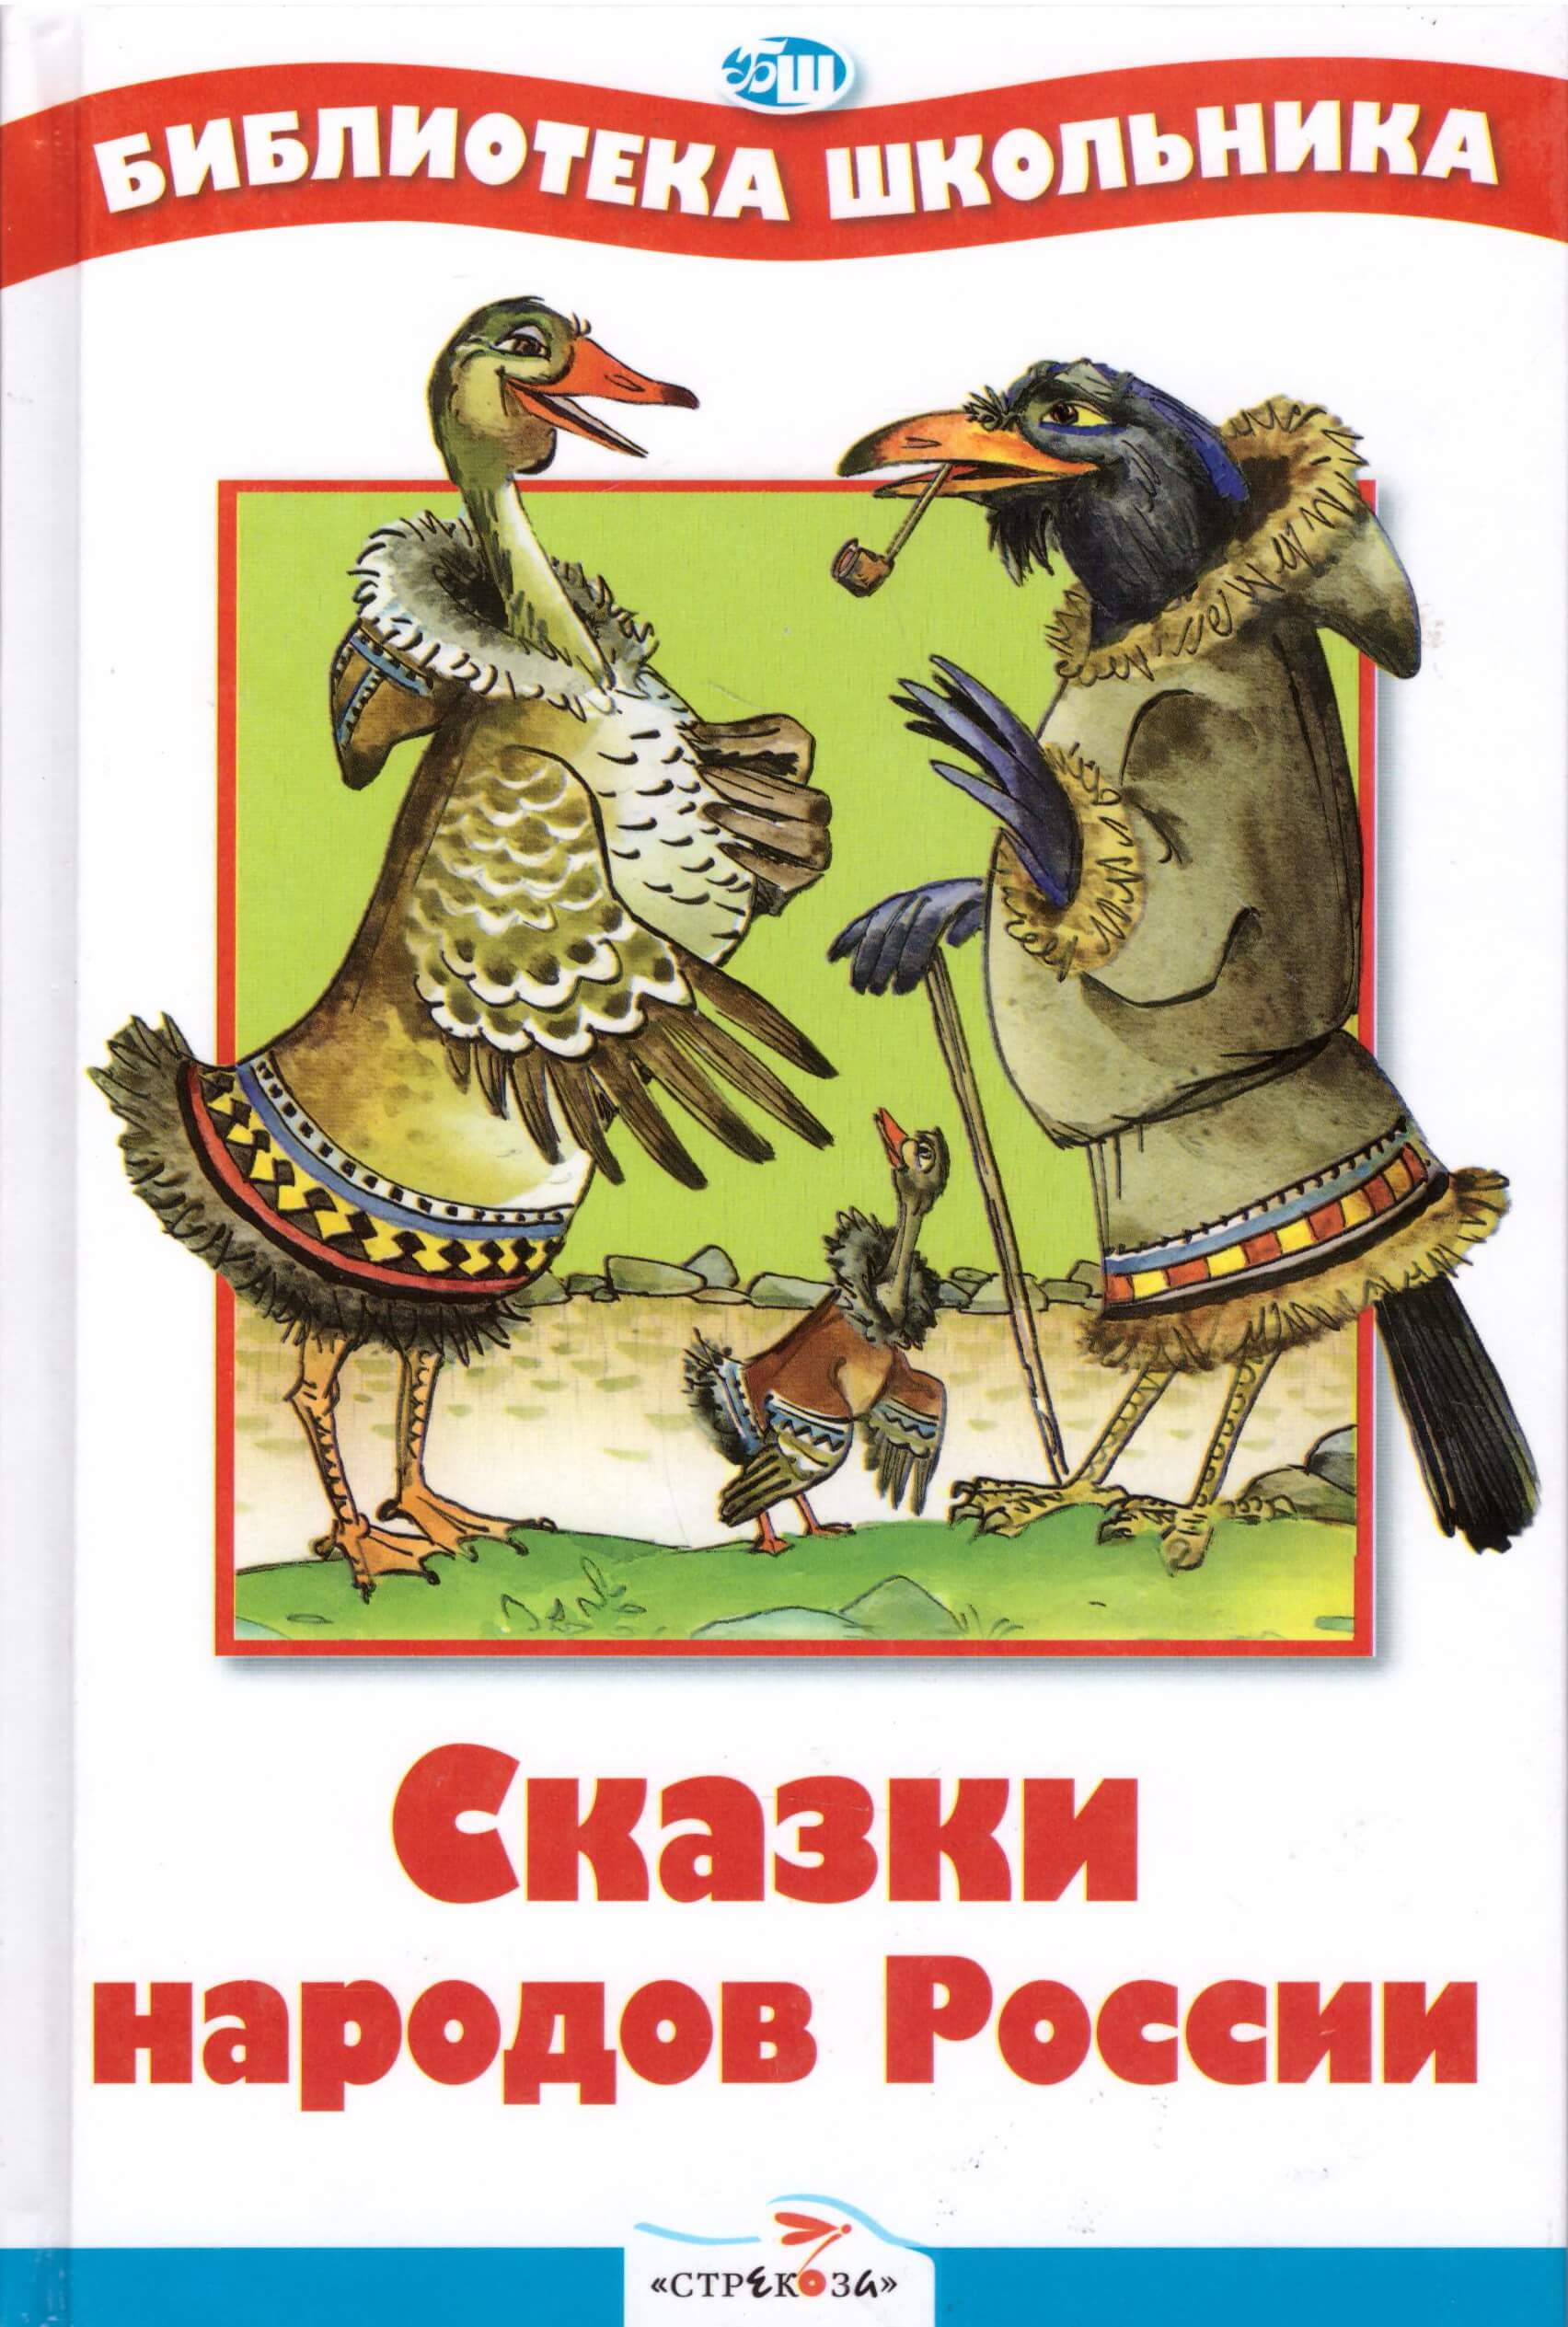 Татарские народные сказки на русском языке читать